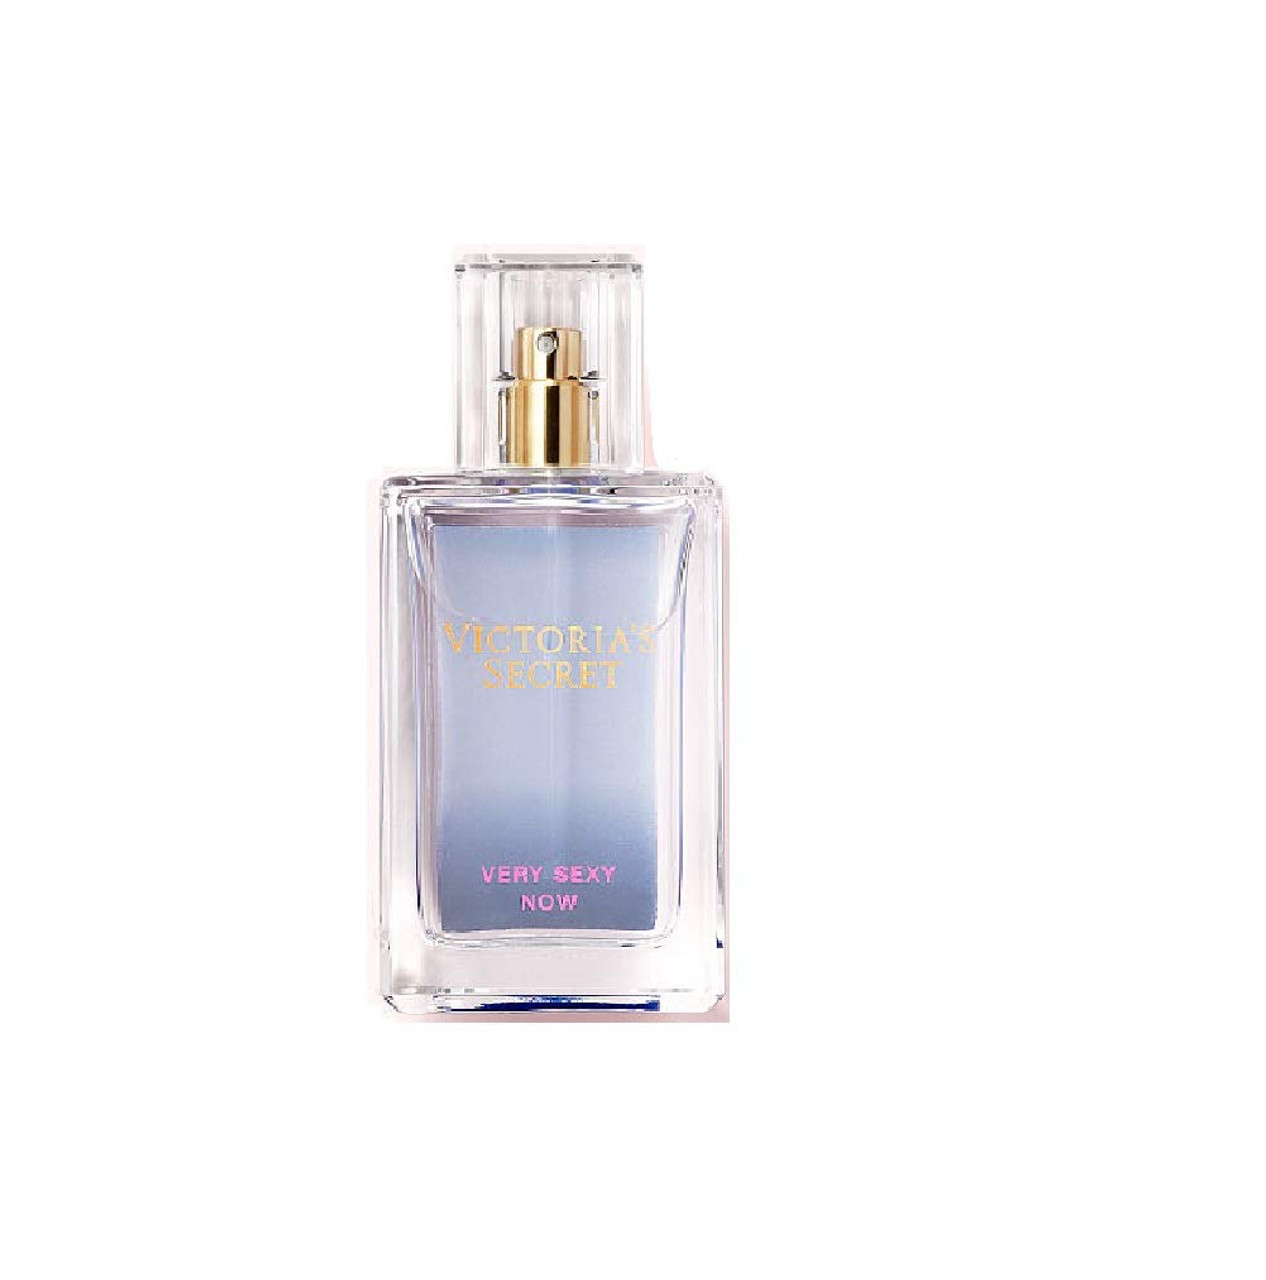 Victorias Secret Limited Edition Eau de Parfums Very Sexy Now 1.7